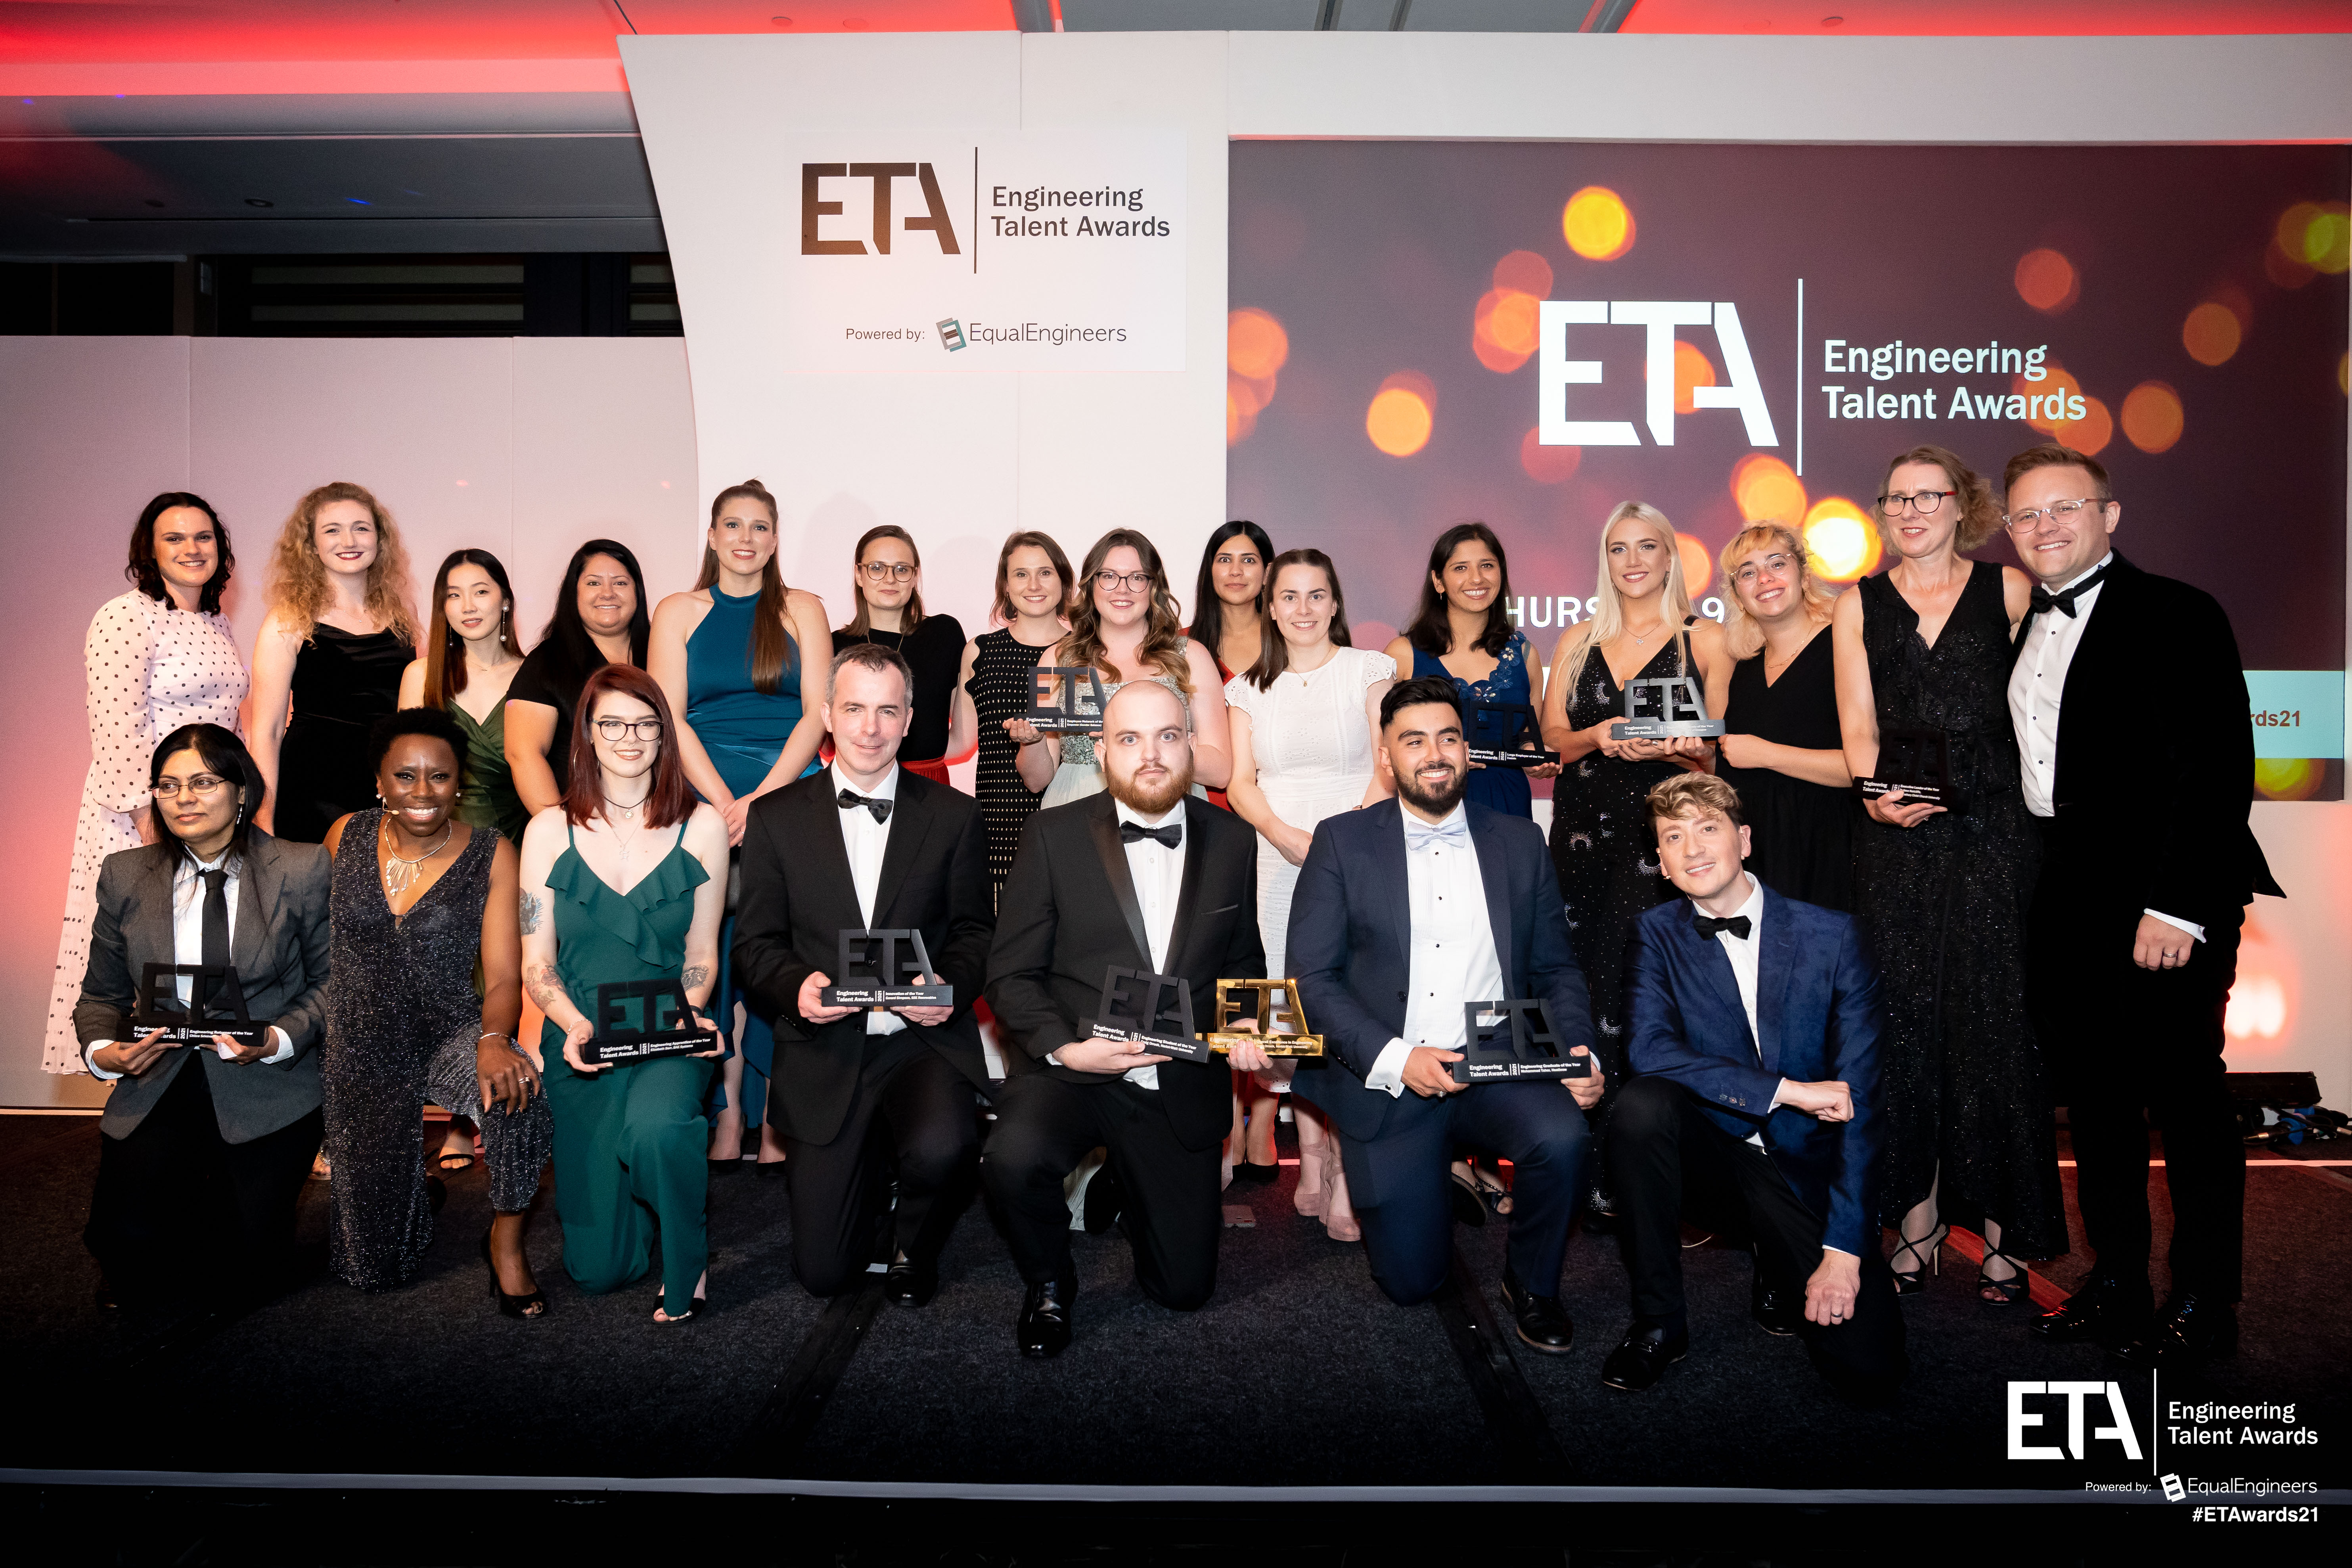 All winners in ETA categories